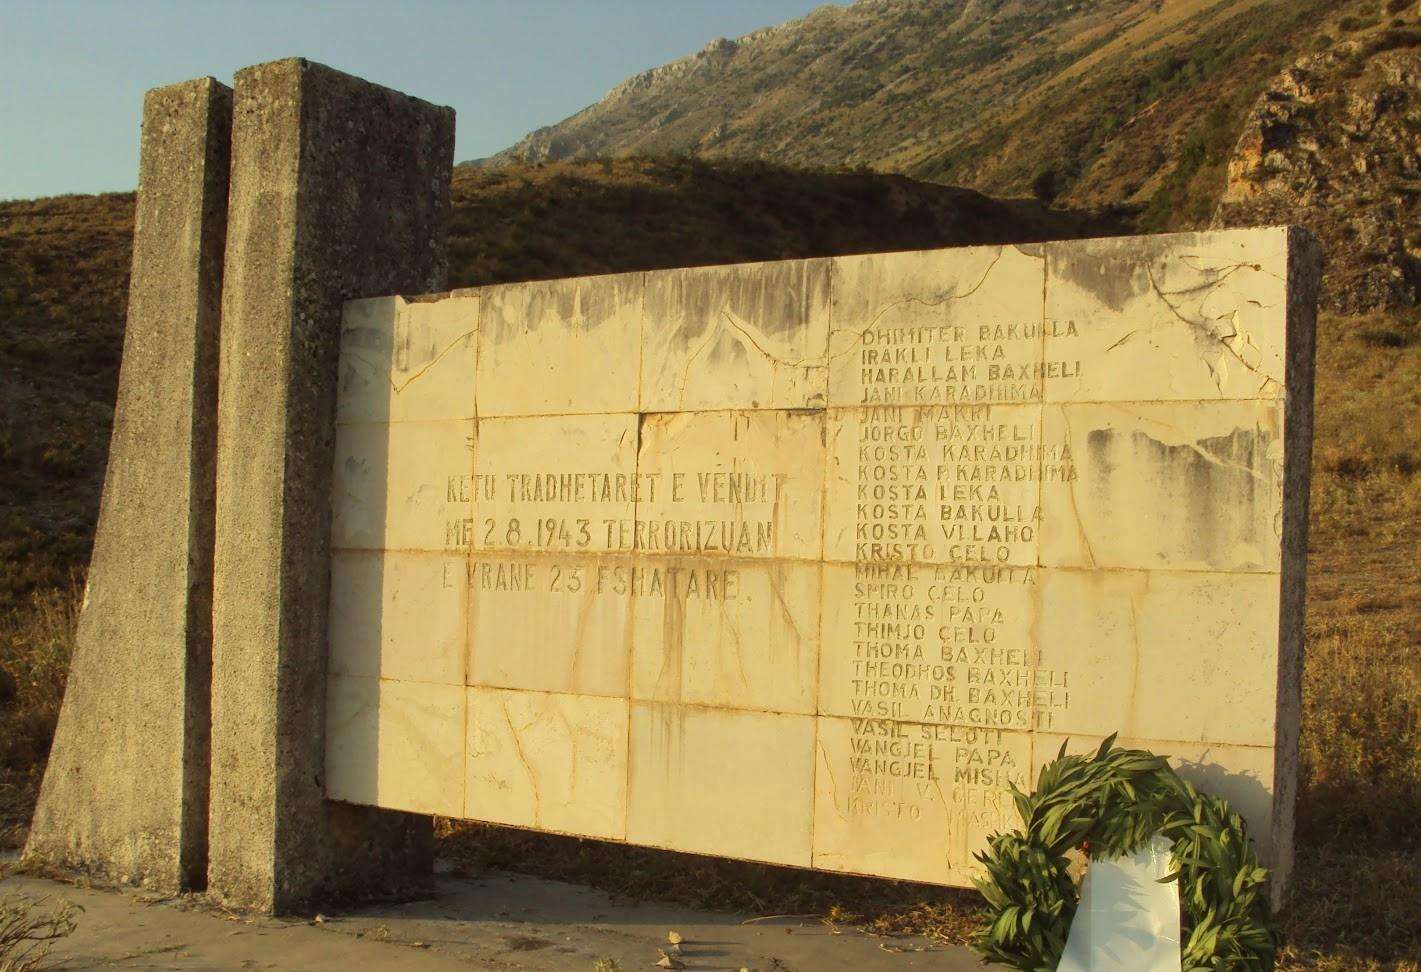  Σαν σήμερα το 1943 οι Αλβανοί μπαλίστες εκτελούν 27 Βορειοηπειρώτες στη Γλυνα  